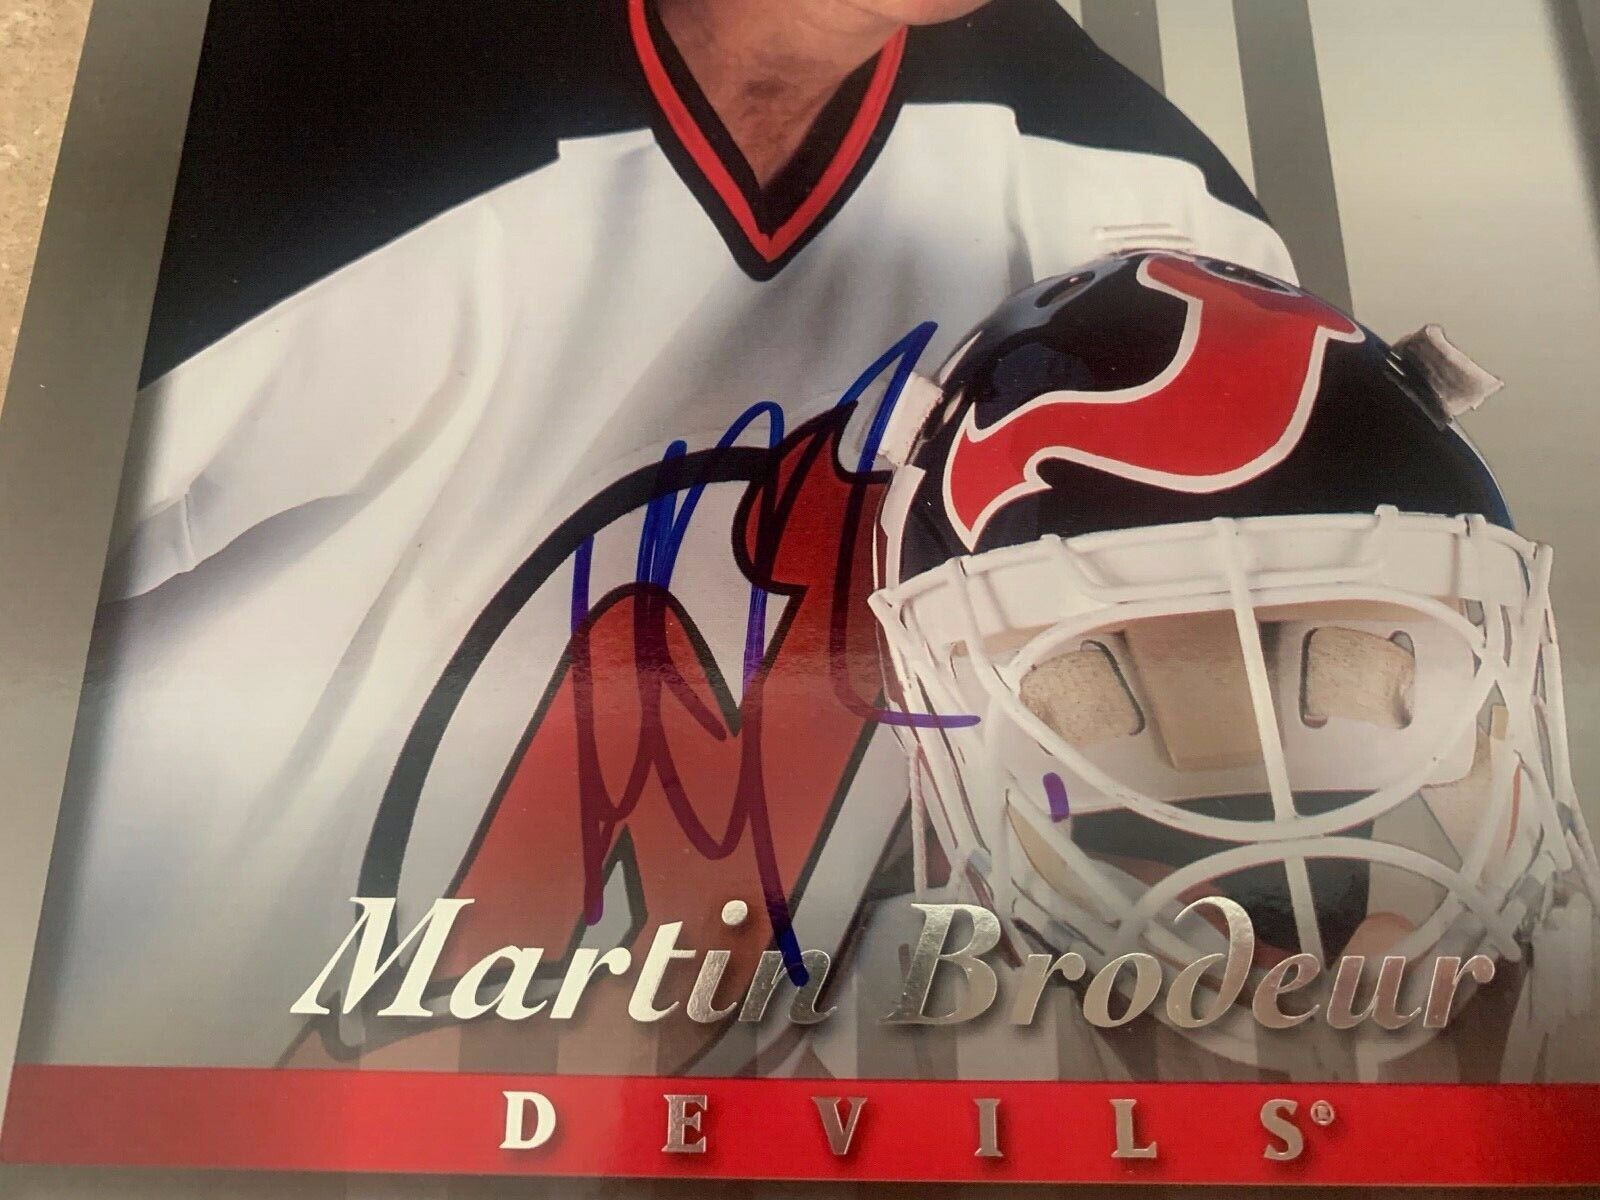 Martin Brodeur Devils 1997 Donruss Autographed 8x10 Photo JSA COA HH75194